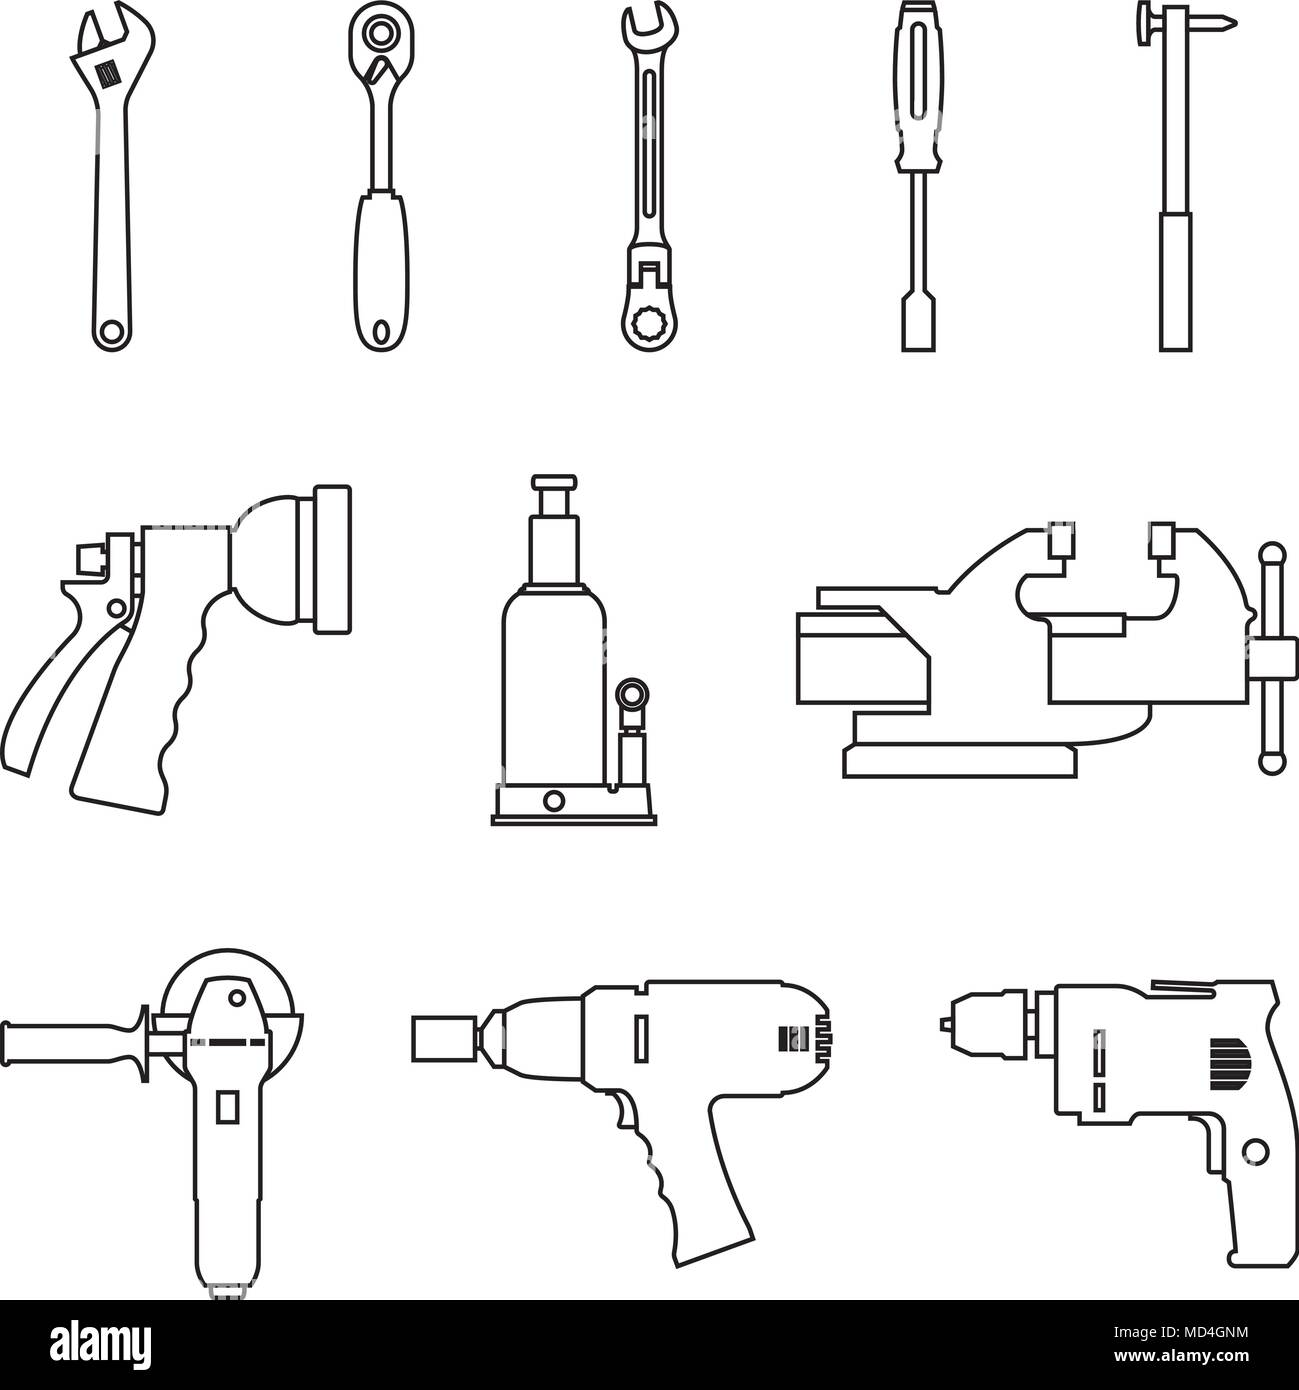 Les outils électriques et d'outils à main pour la réparation et la fabrication. Fine ligne vectorielle Illustration de Vecteur